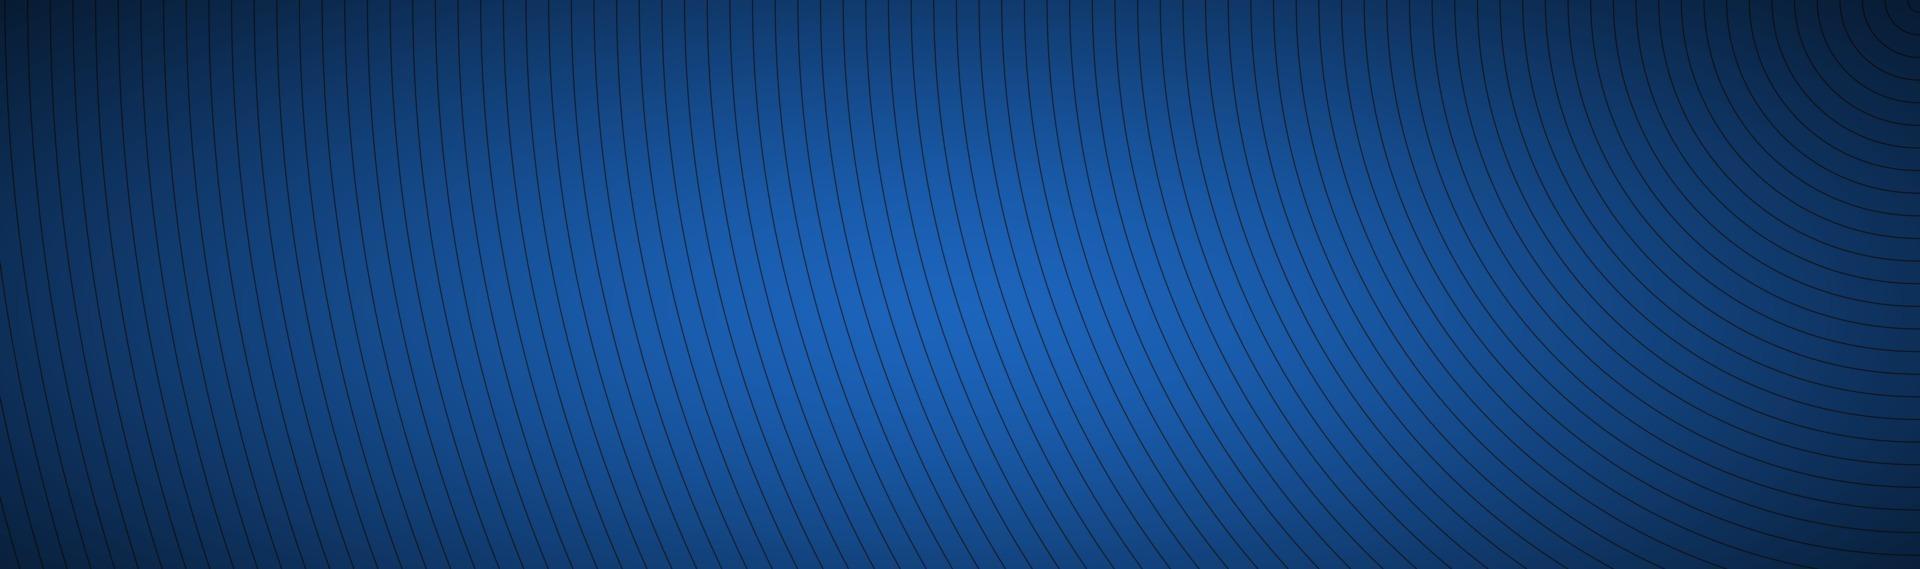 en-tête abstrait bleu moderne l'apparence des lignes circulaires de la bannière en acier inoxydable sur fond bleu vecteur